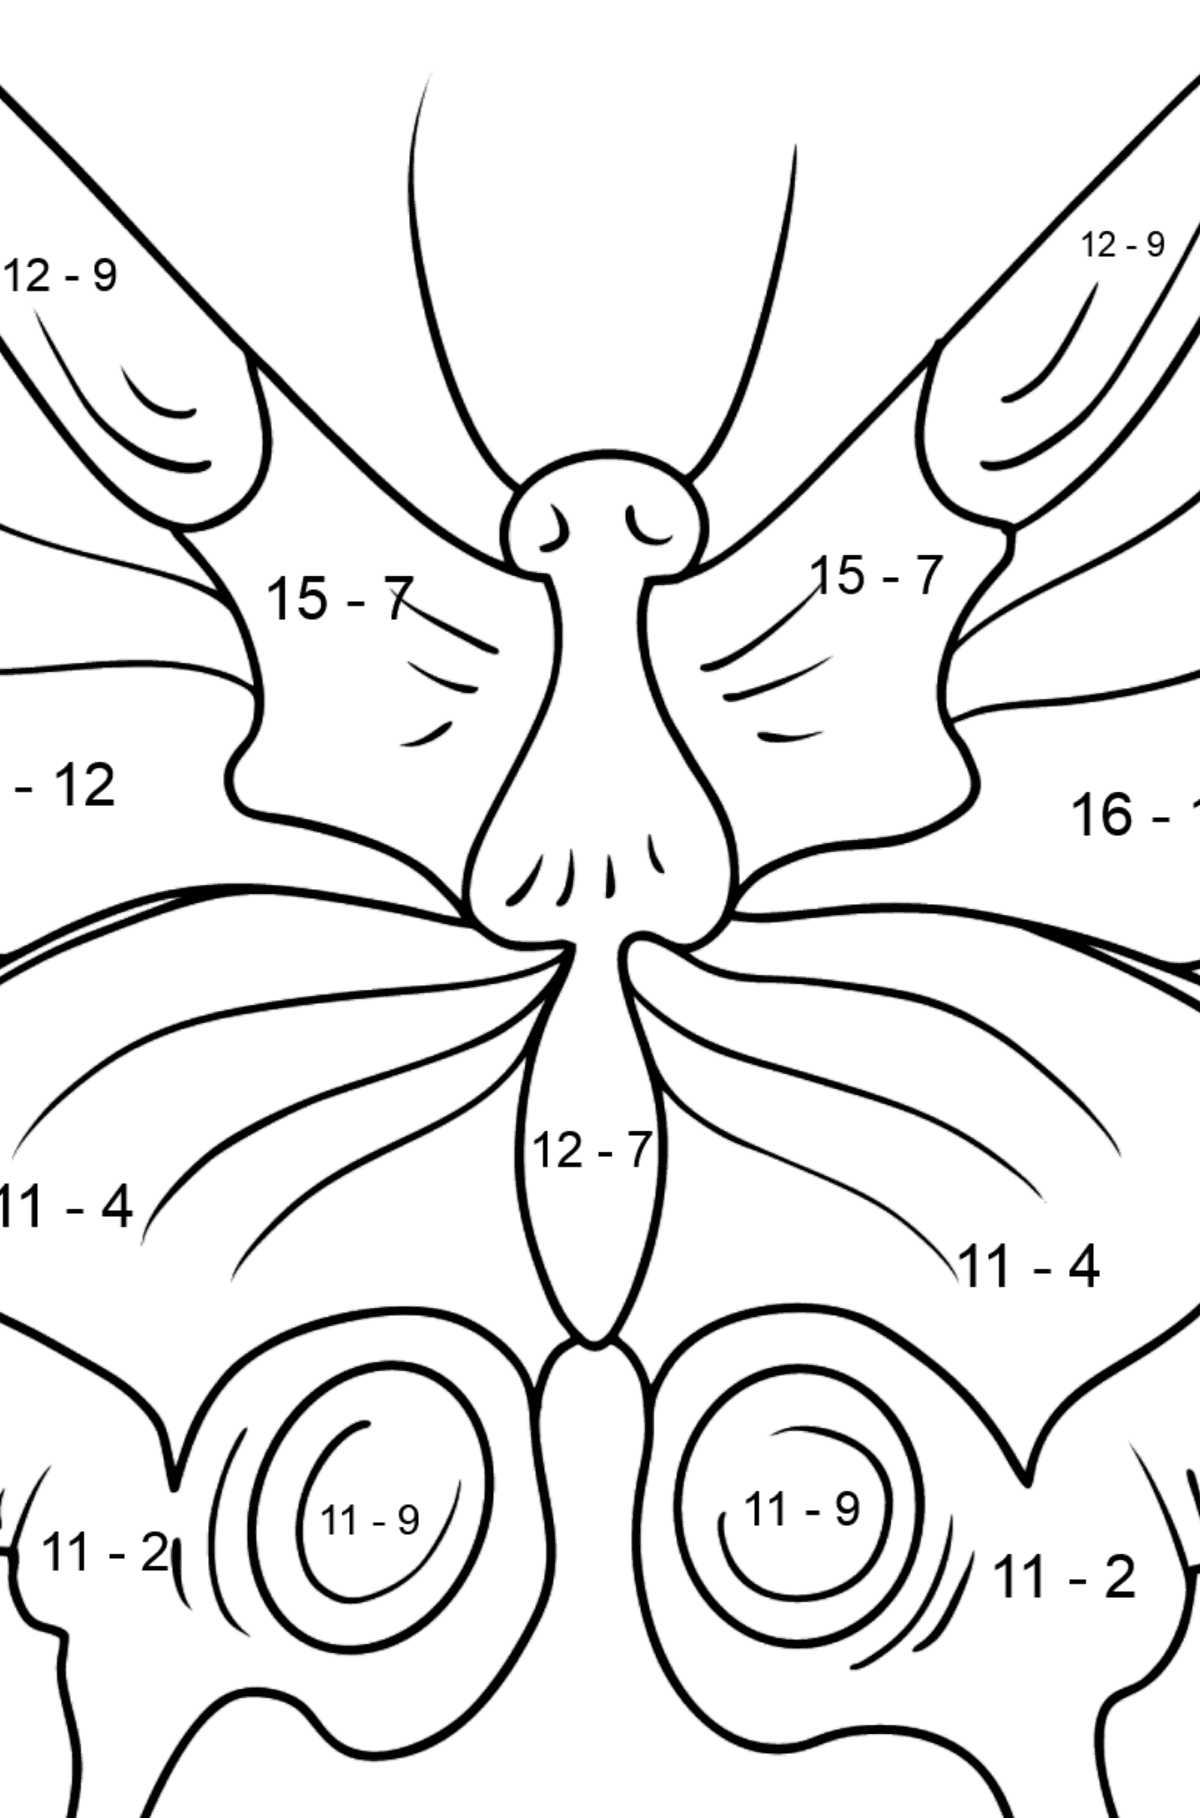 Omalovánka motýl otakárek - Matematická Omalovánka - Odčítání pro děti